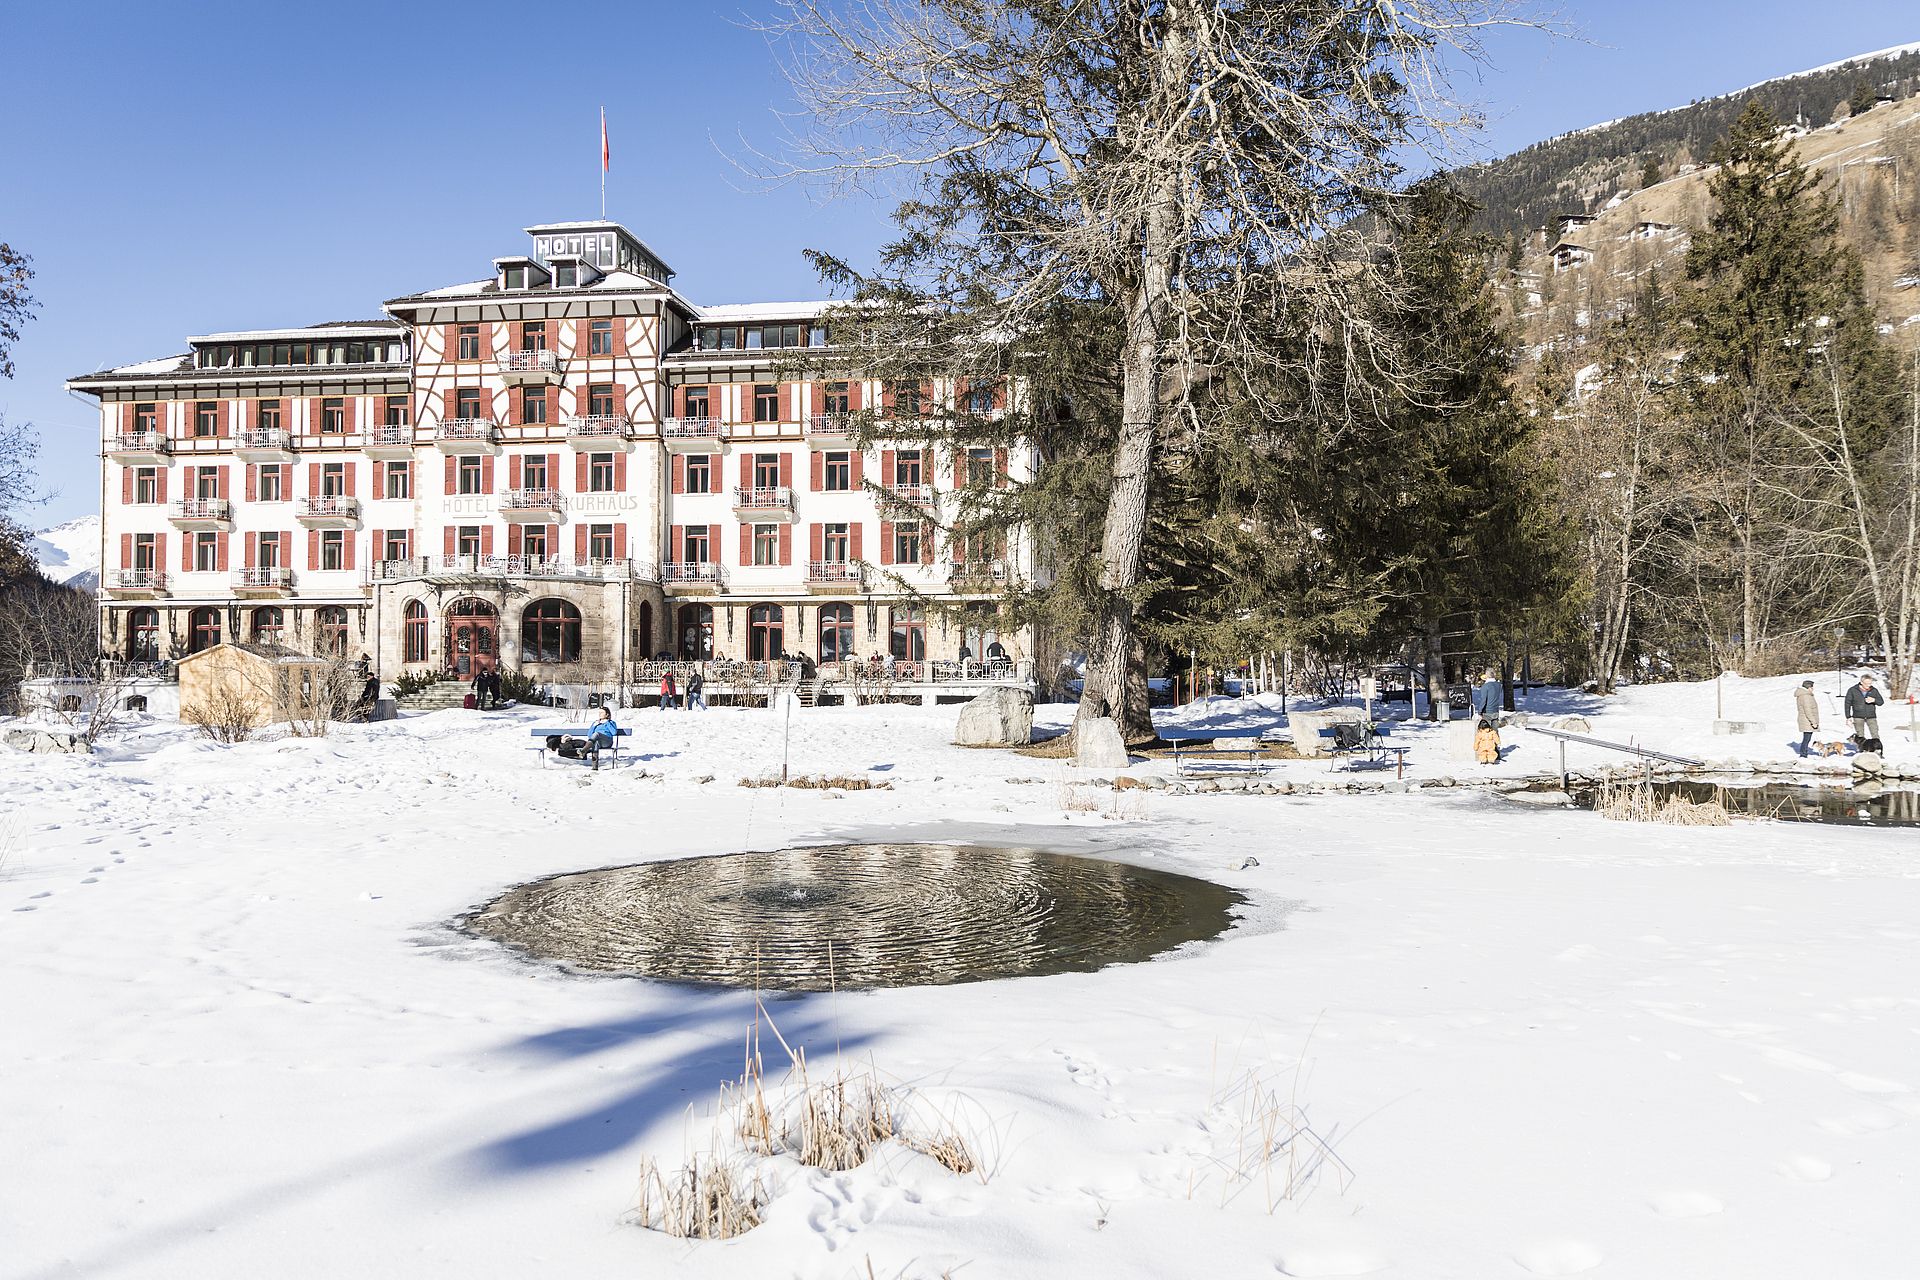 Het 'deftige' Kurhaus in Bergün blijkt een gezellif familiehotel te zijn